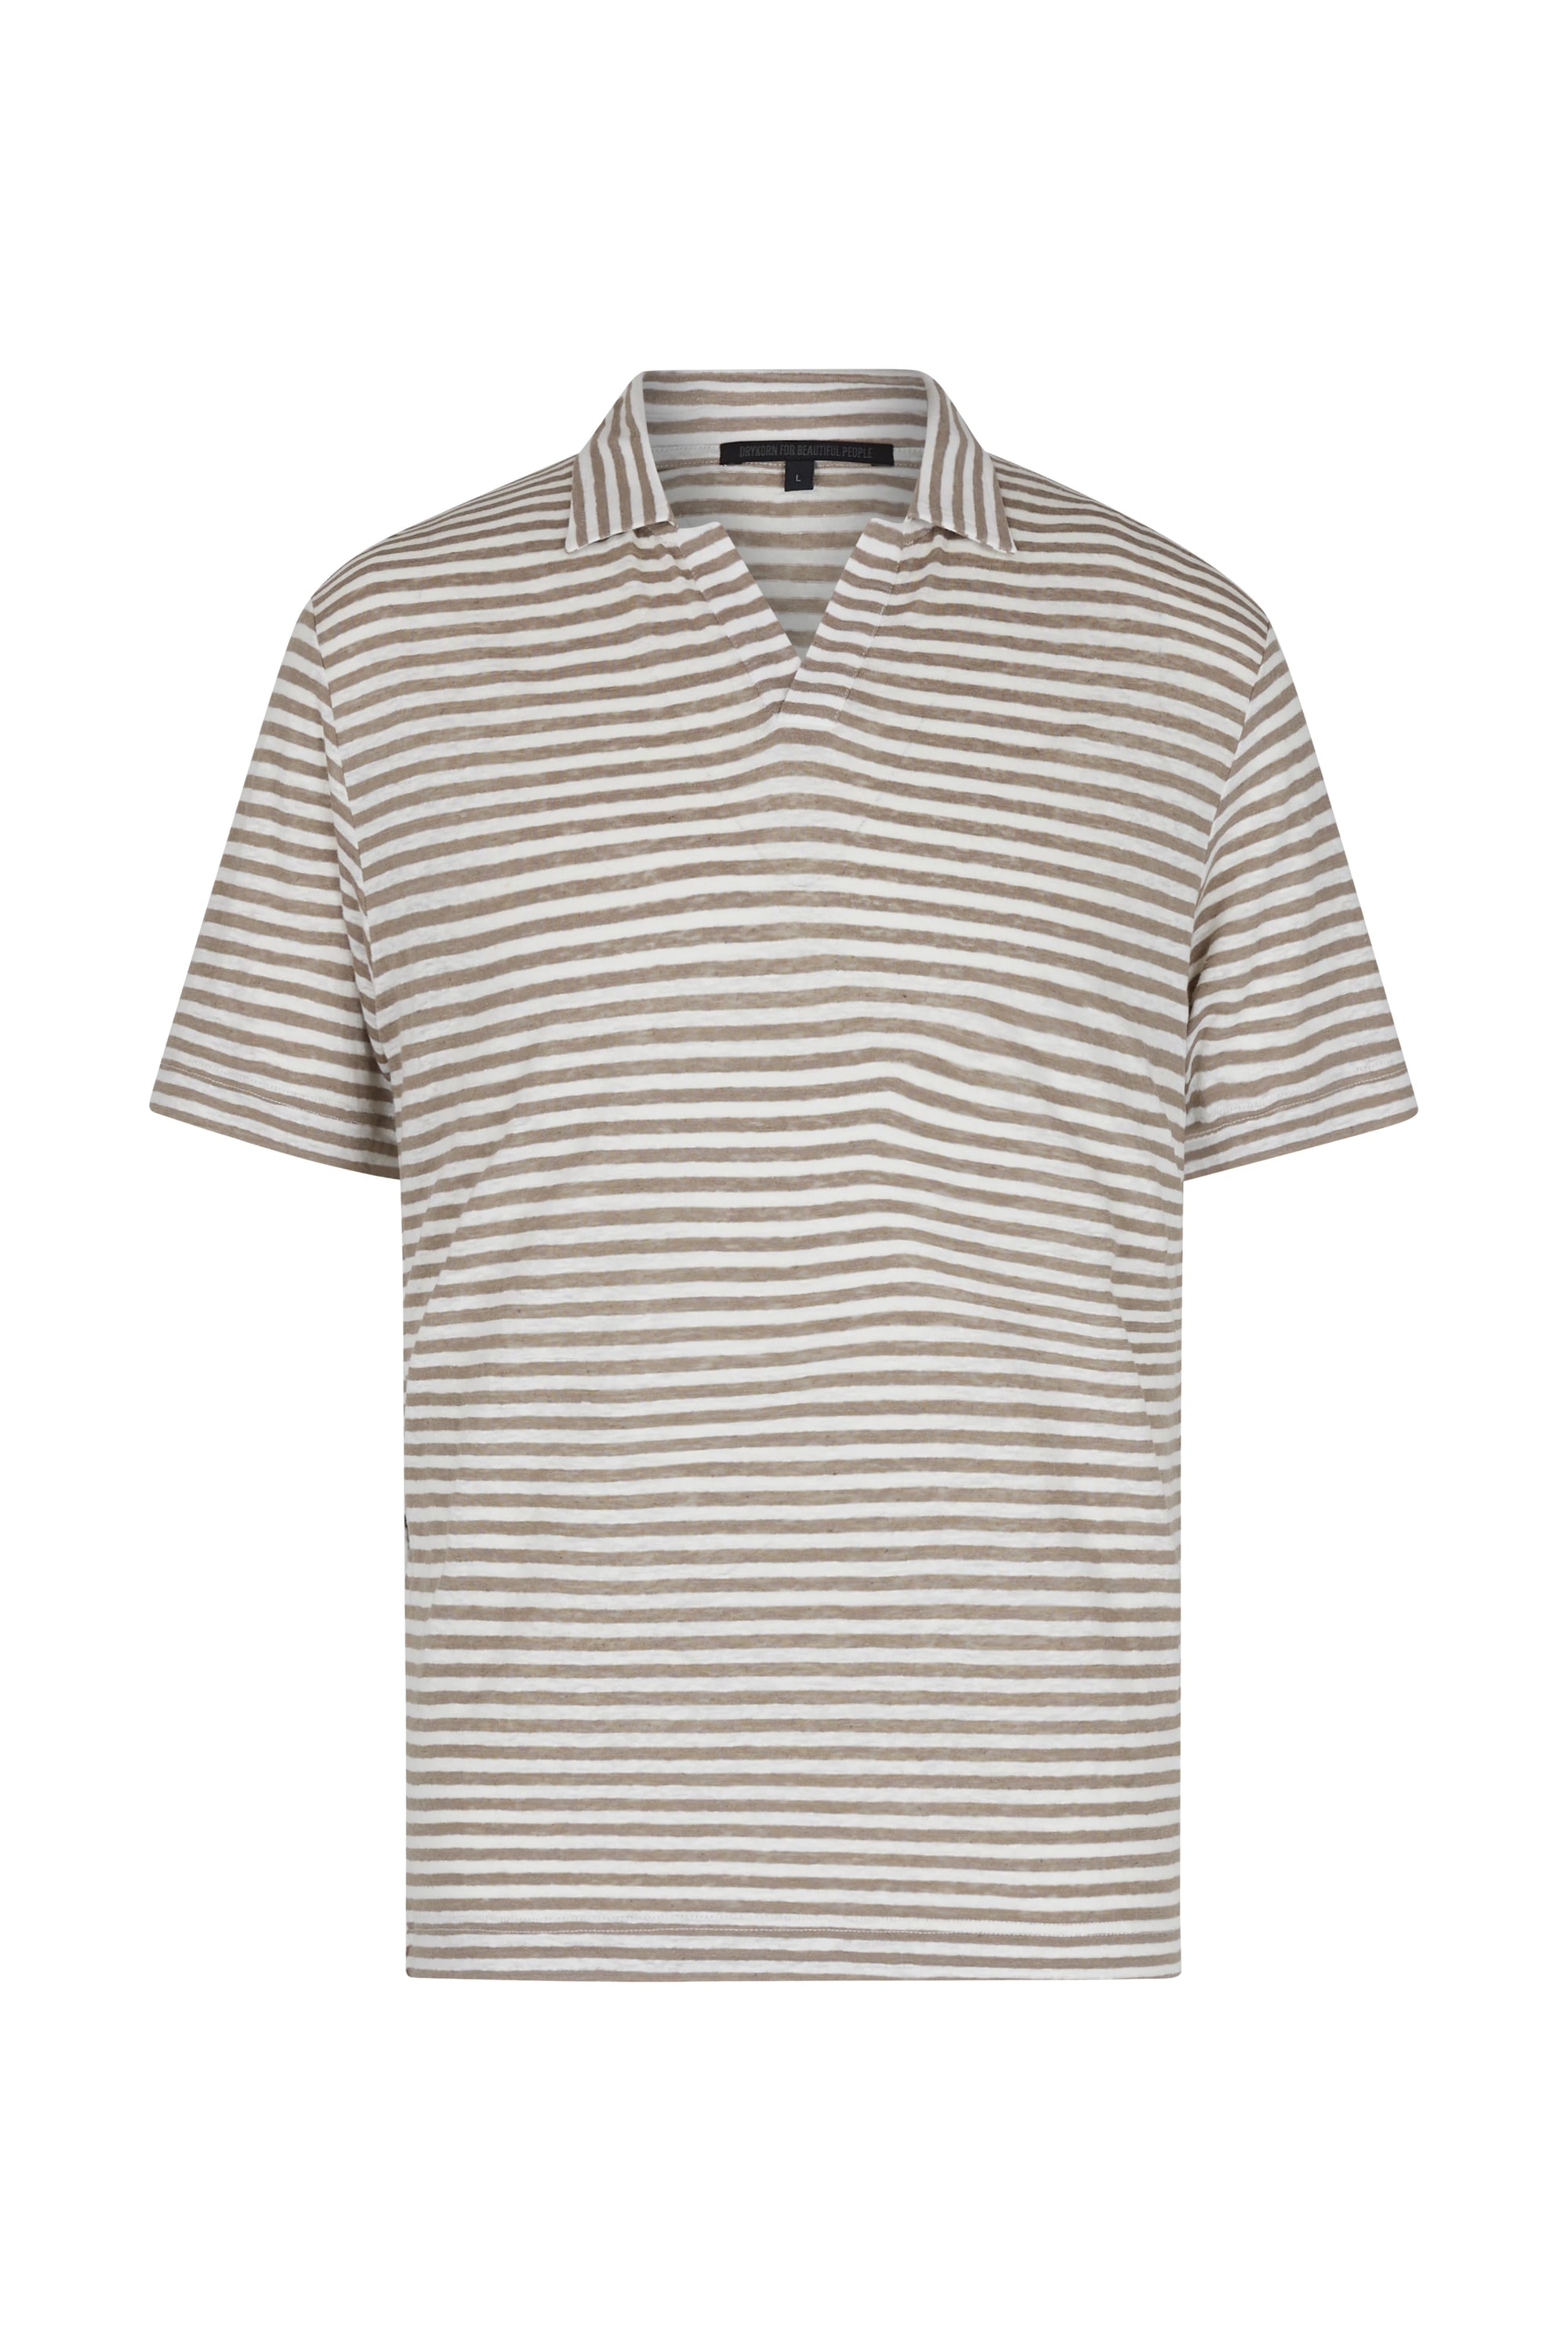 Drykorn - Sommerliches Poloshirt aus leichter Jerseyqualität - Benedickt